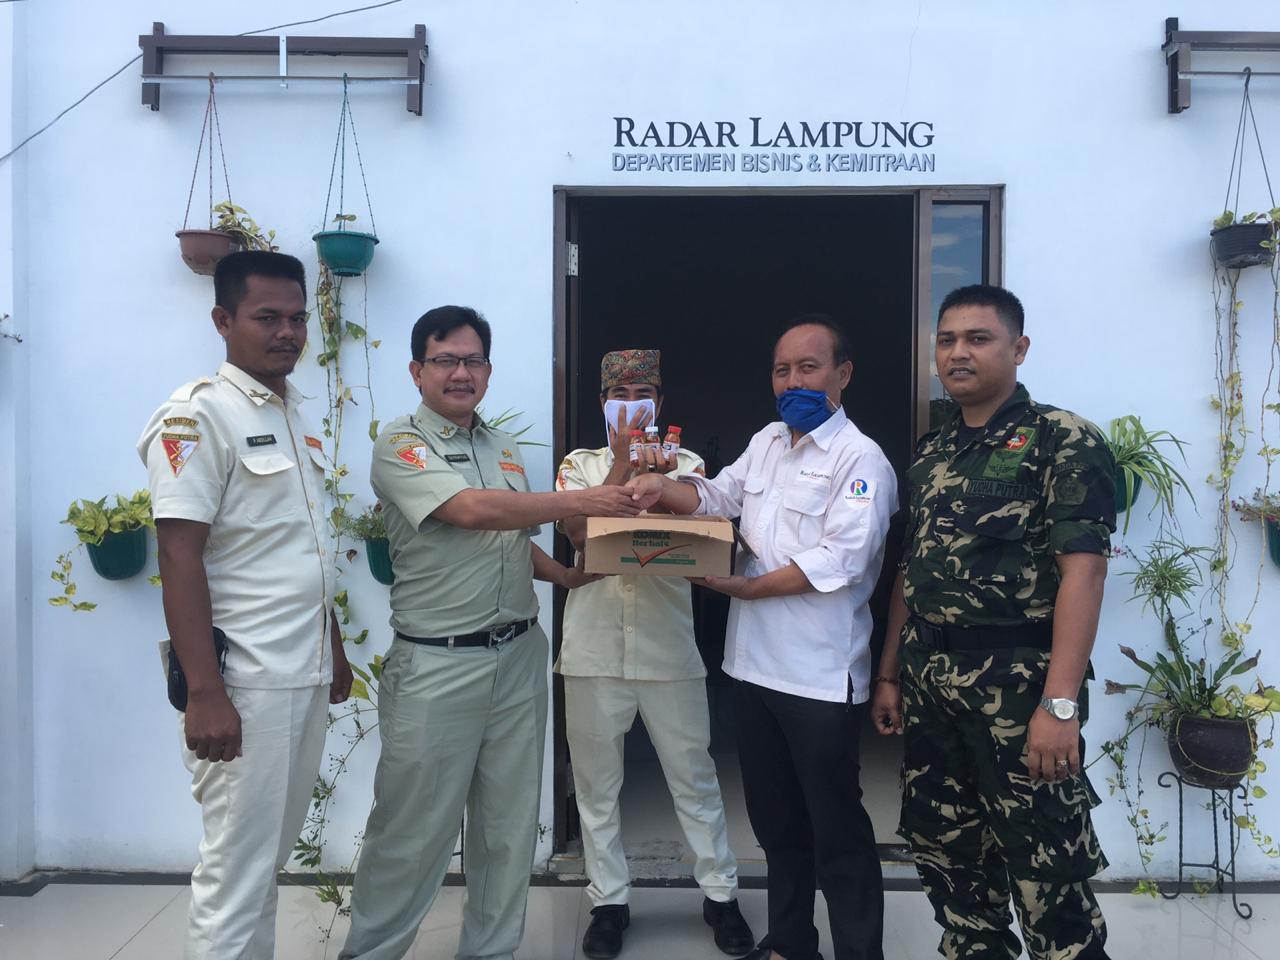 MSP Lampung Timur Bagikan Superfit untuk Radar Lampung